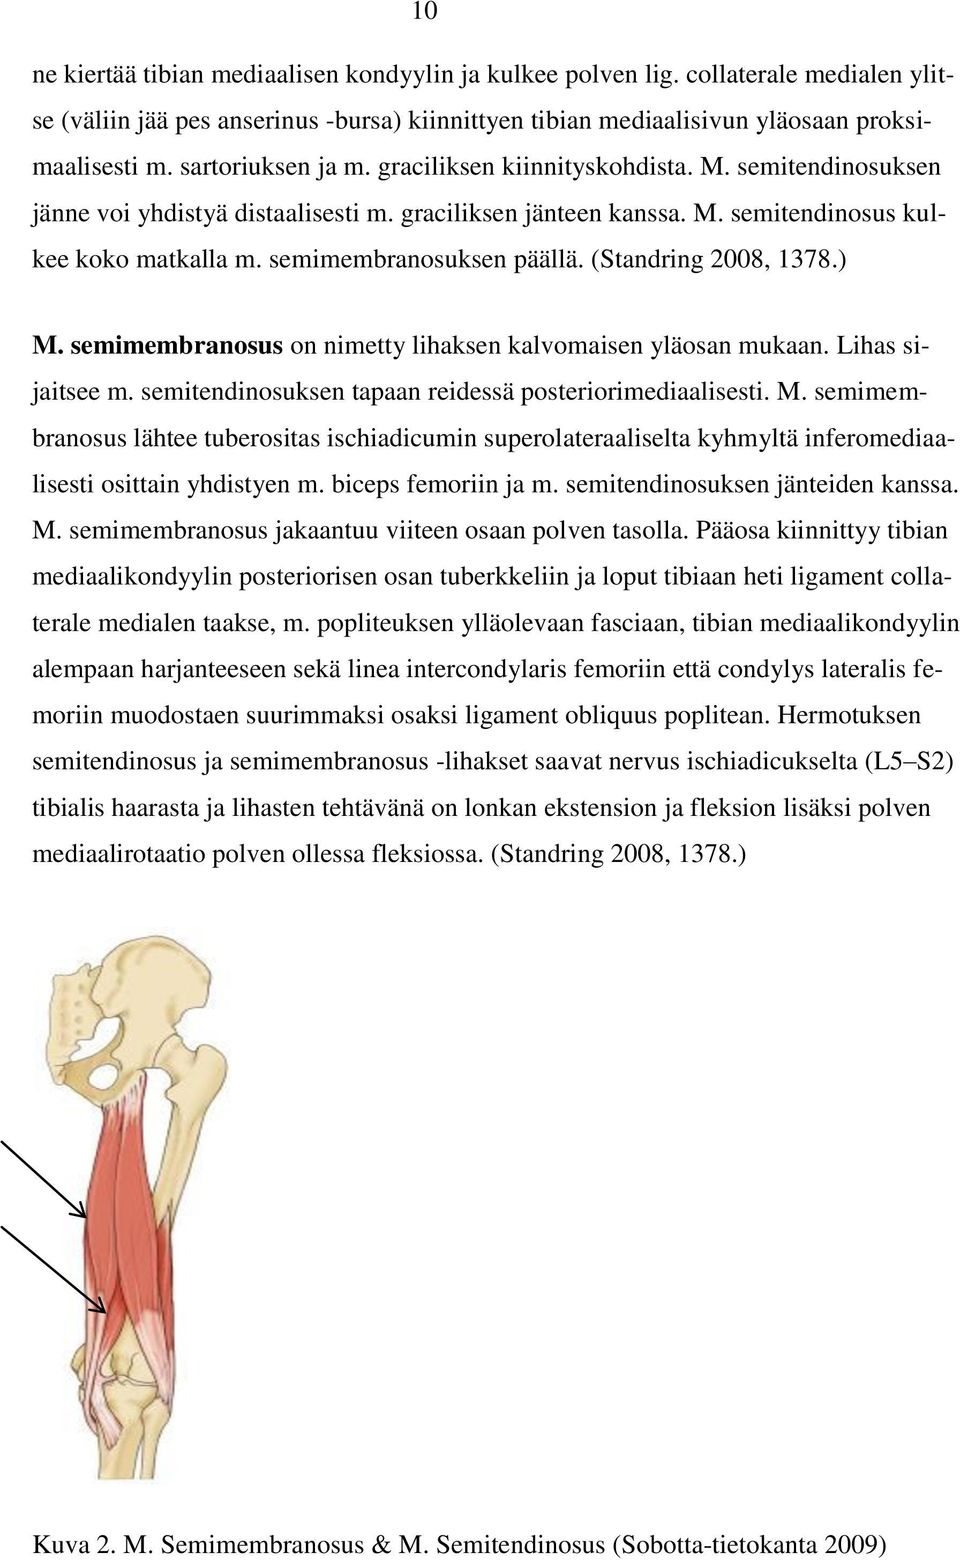 semimembranosuksen päällä. (Standring 2008, 1378.) M. semimembranosus on nimetty lihaksen kalvomaisen yläosan mukaan. Lihas sijaitsee m. semitendinosuksen tapaan reidessä posteriorimediaalisesti. M. semimembranosus lähtee tuberositas ischiadicumin superolateraaliselta kyhmyltä inferomediaalisesti osittain yhdistyen m.